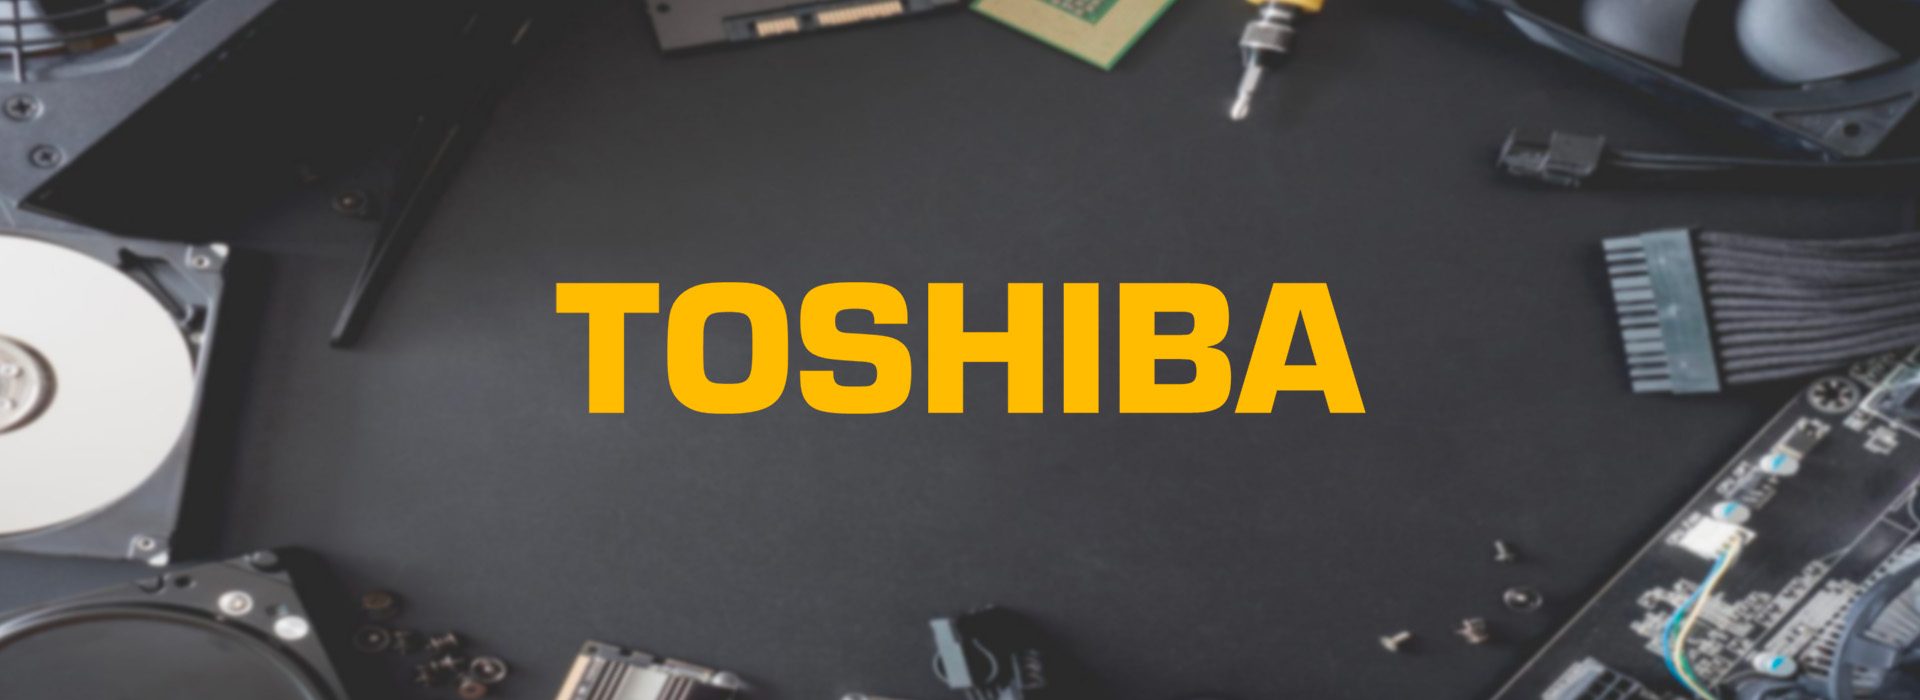 Toshiba header 2